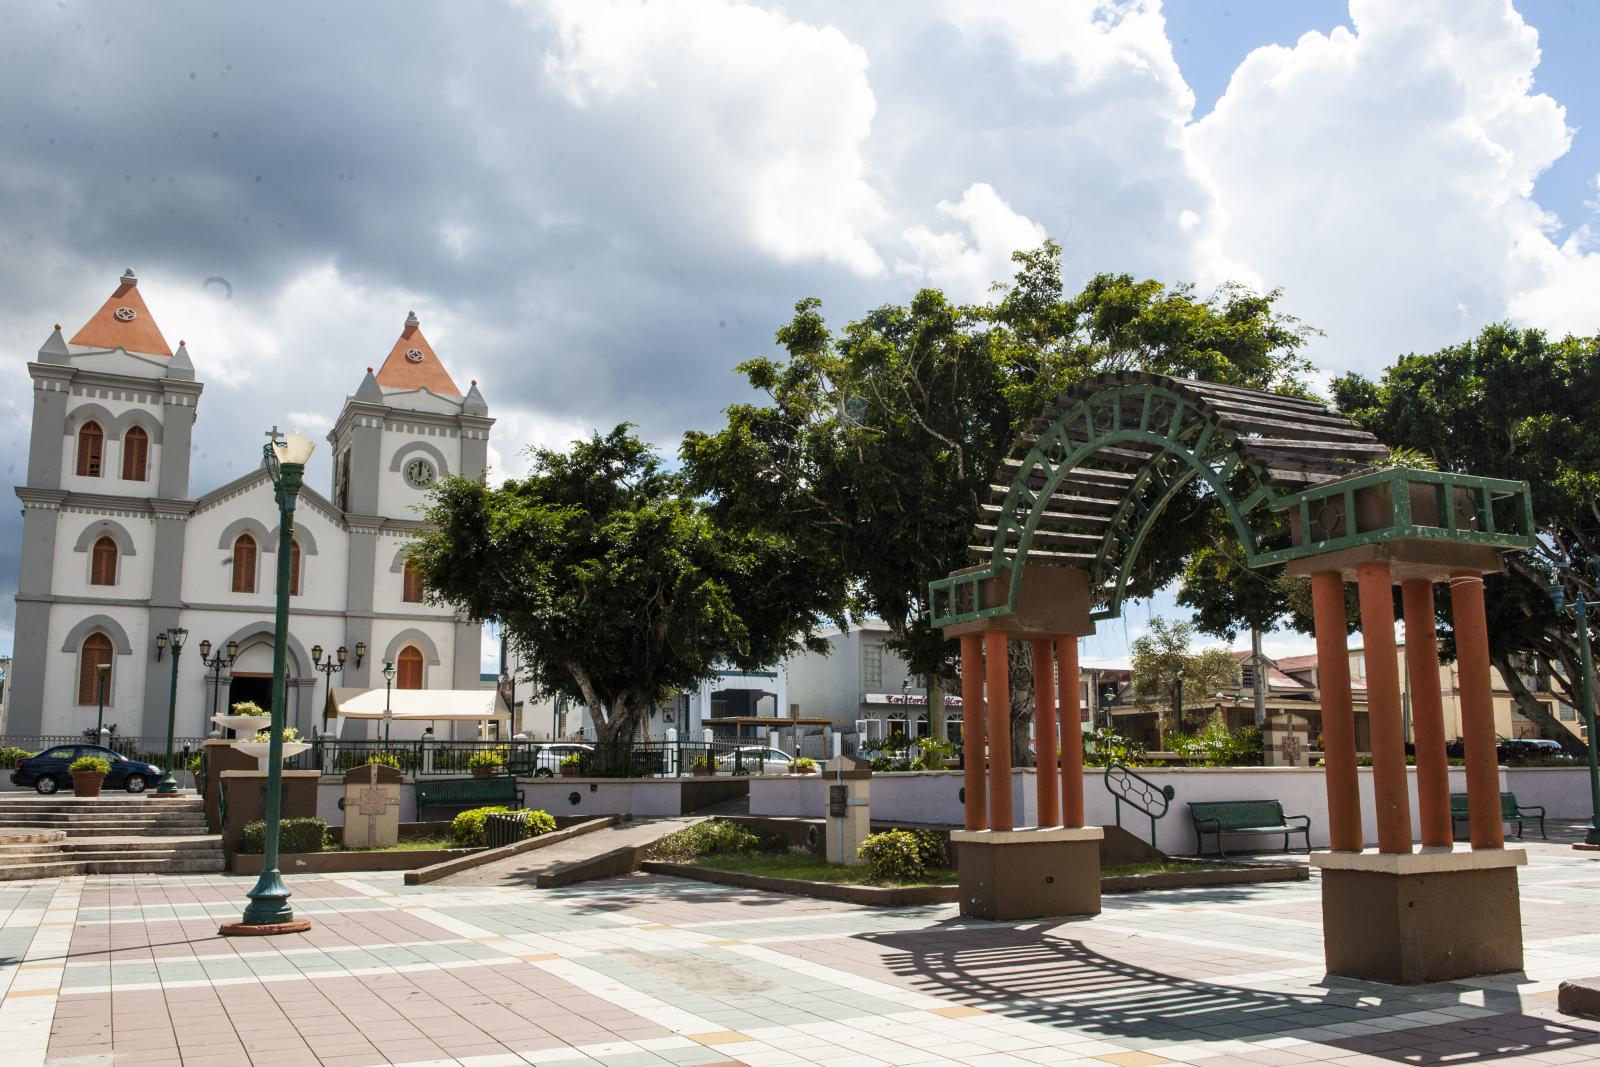 Aibonito's town square